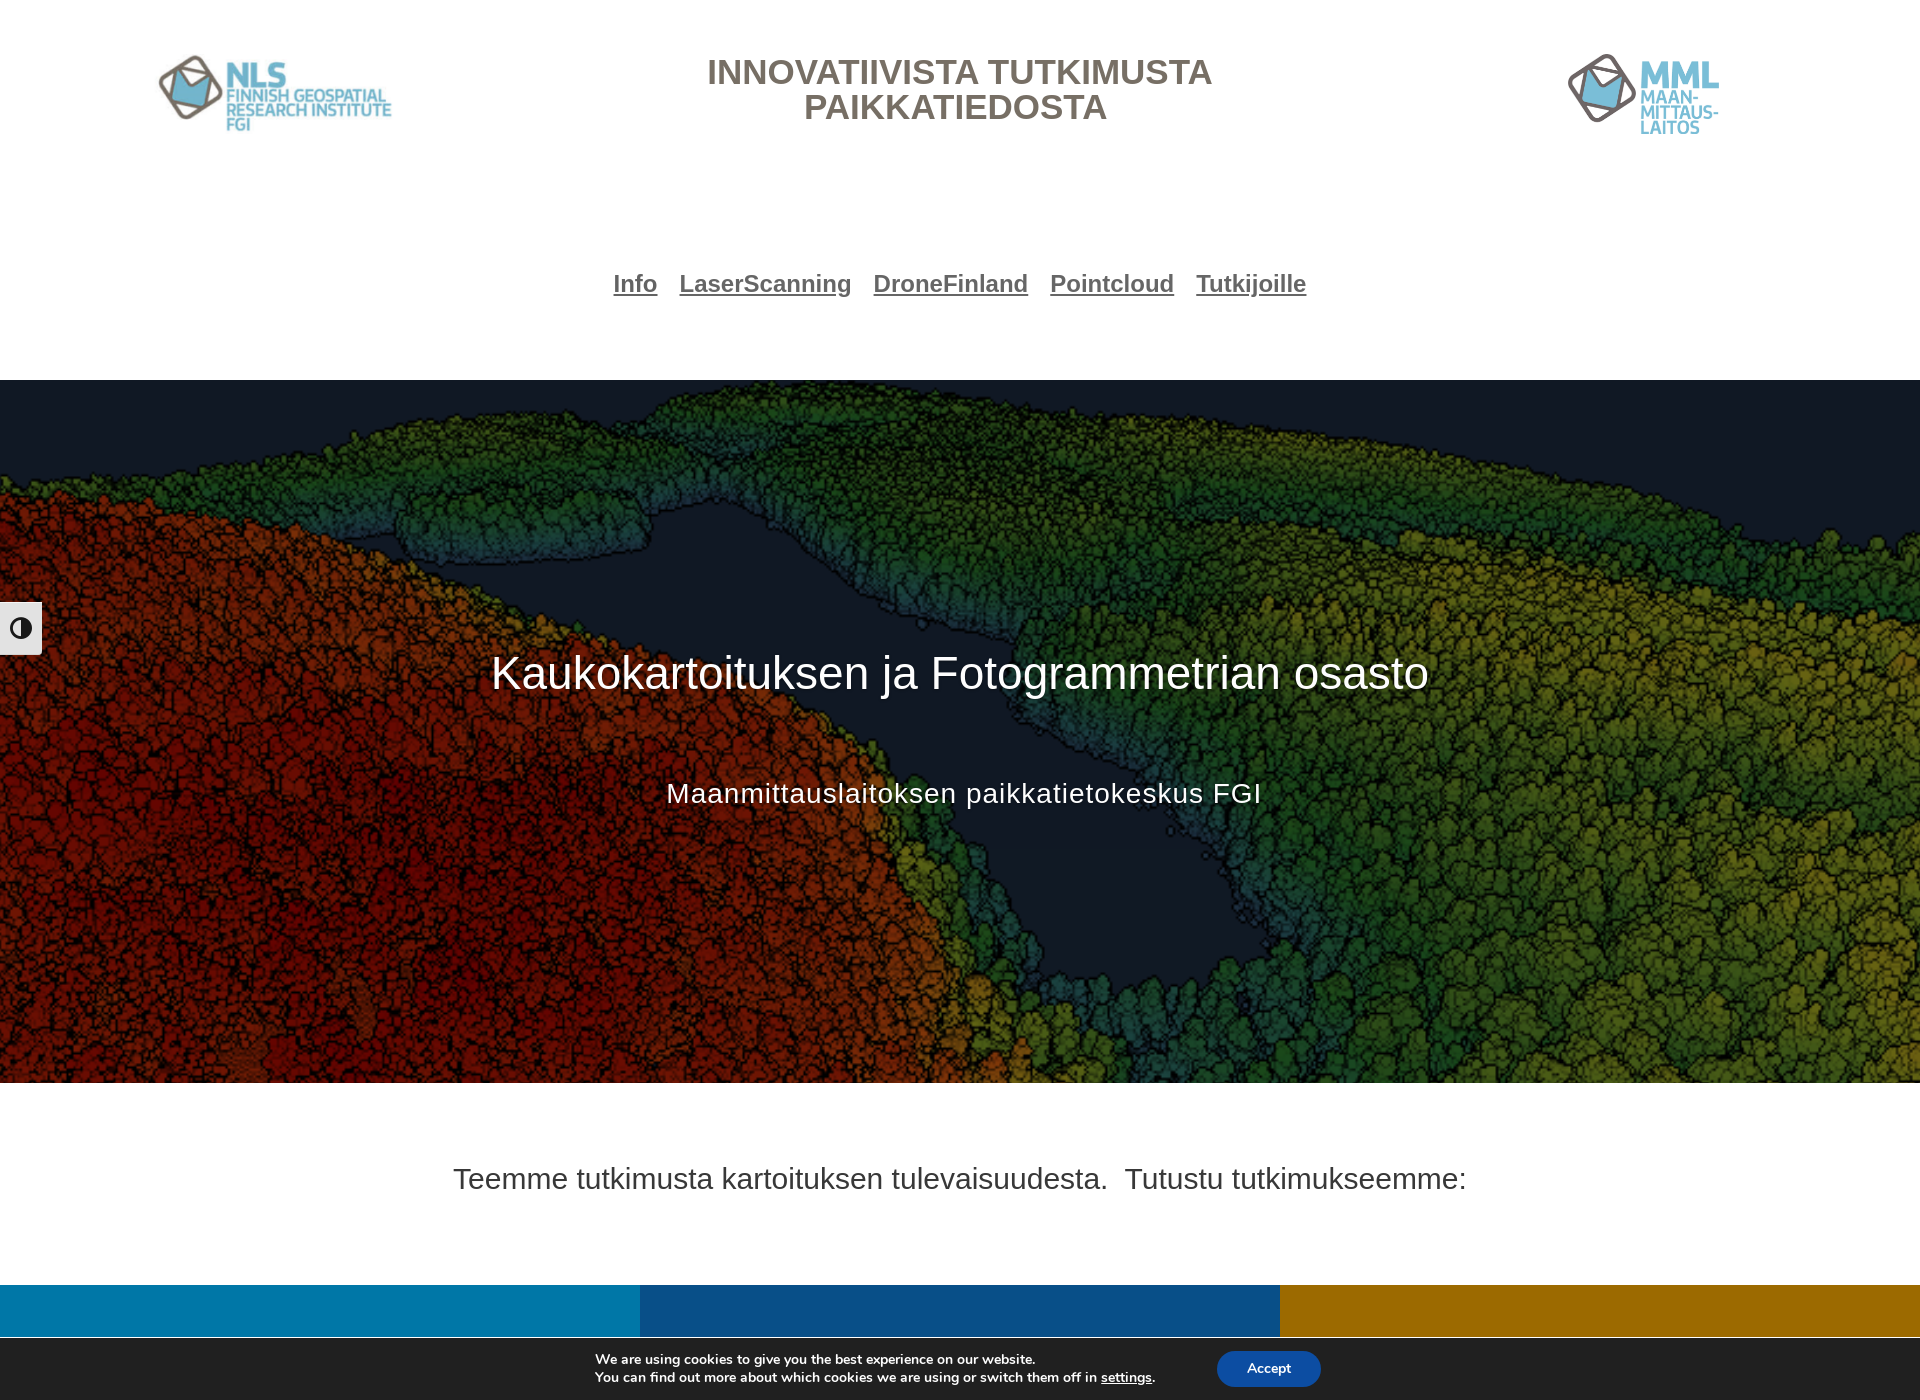 Skärmdump för fgi-remotesensing.fi